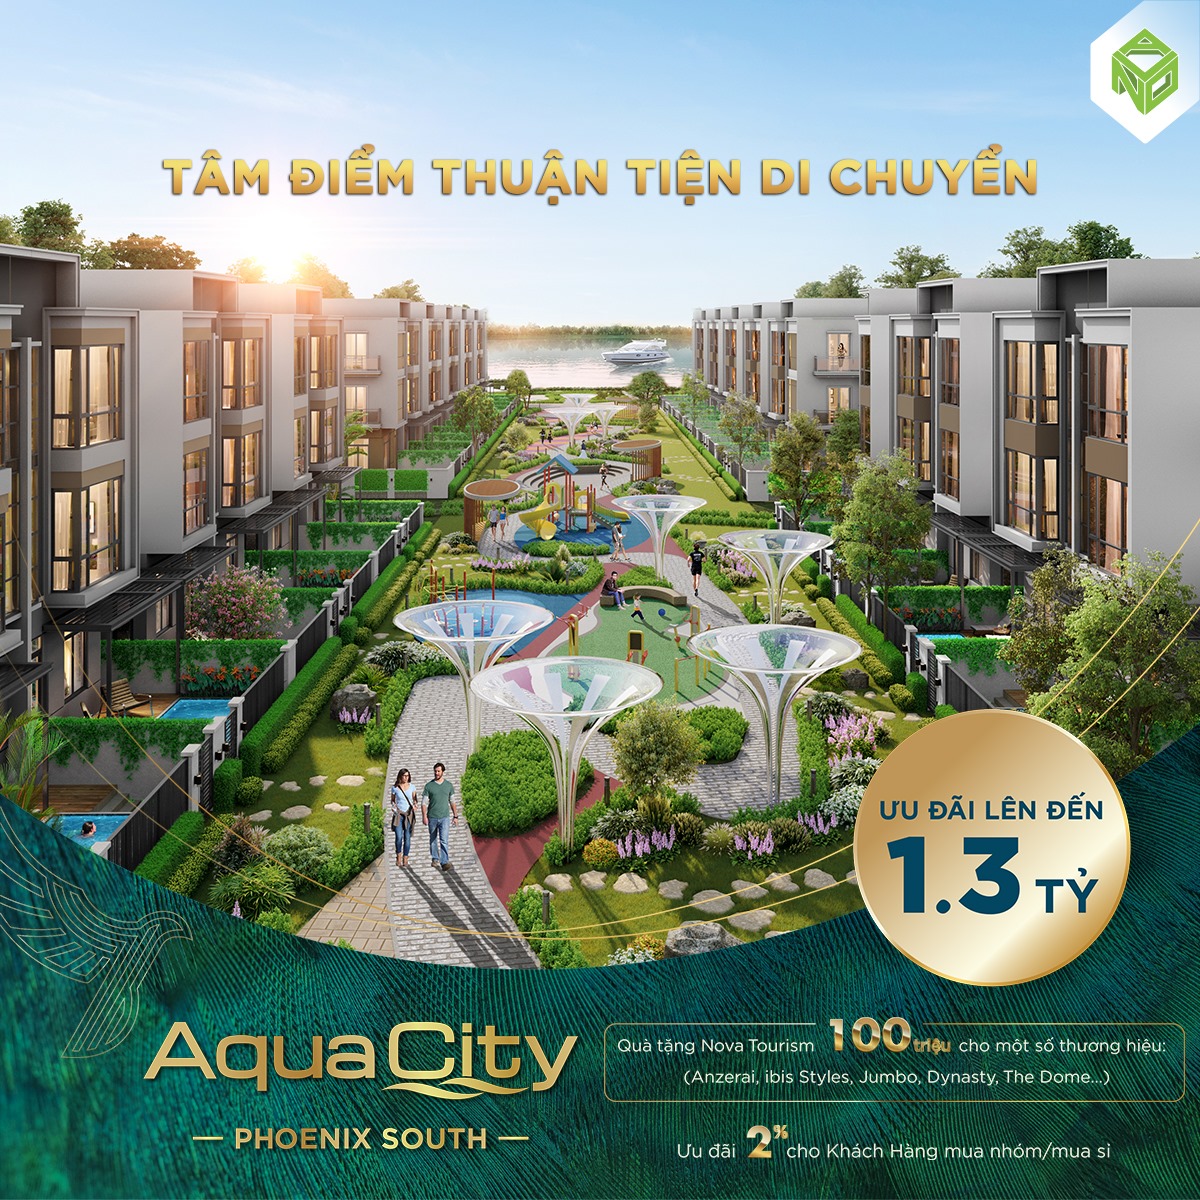 Giá bán Aqua City có cao không? Xem giá bán Aqua City